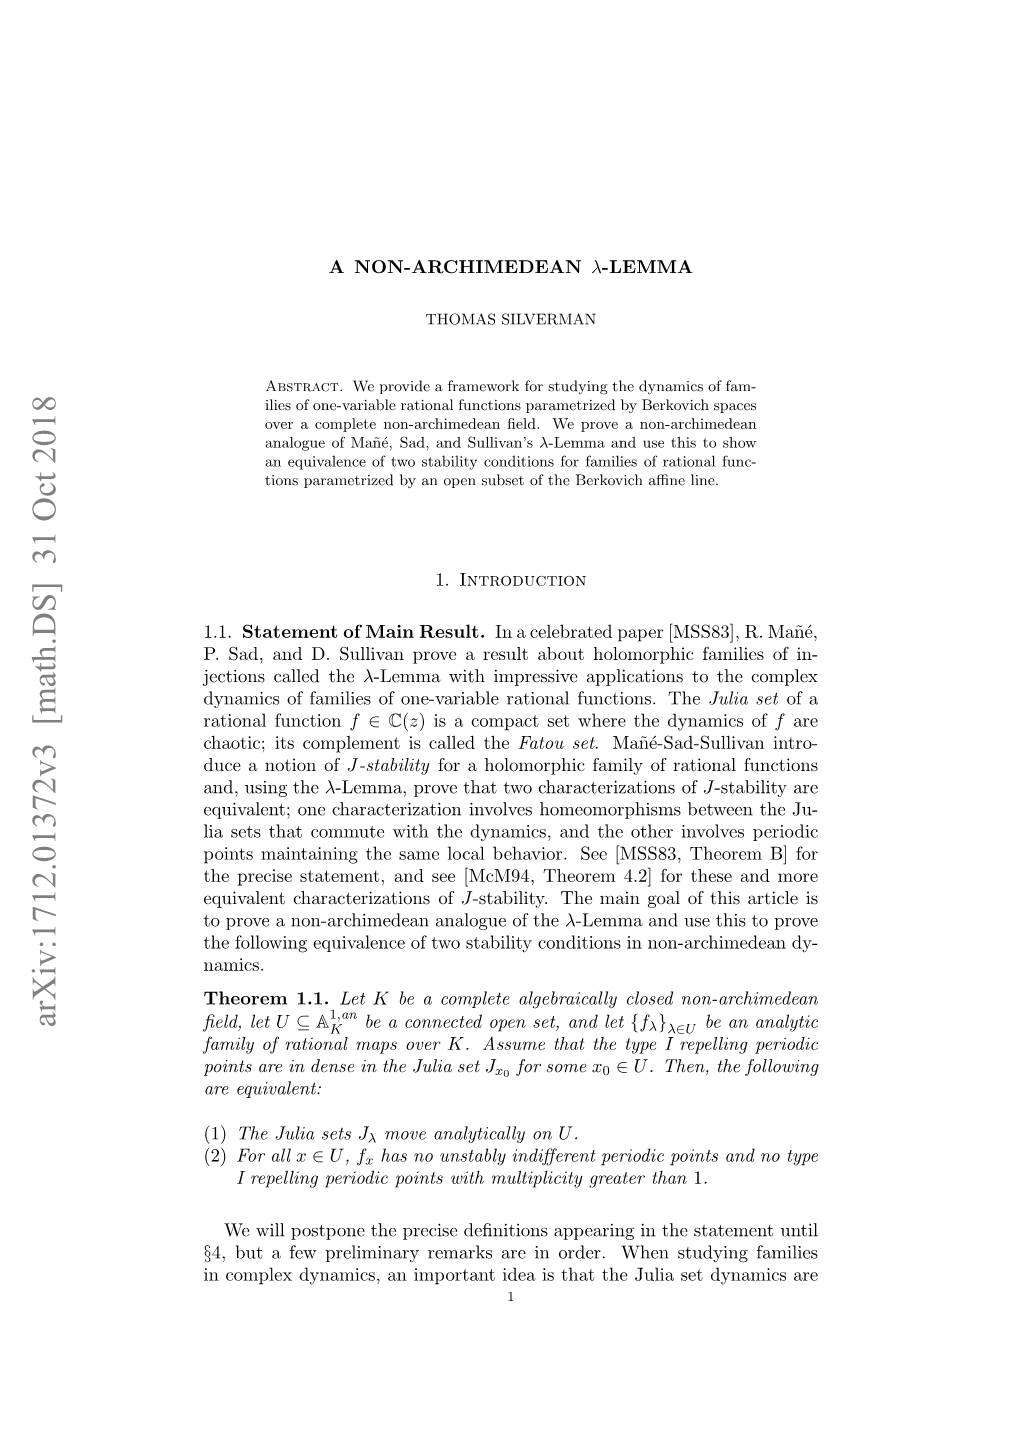 A Non-Archimedean $\Lambda $-Lemma